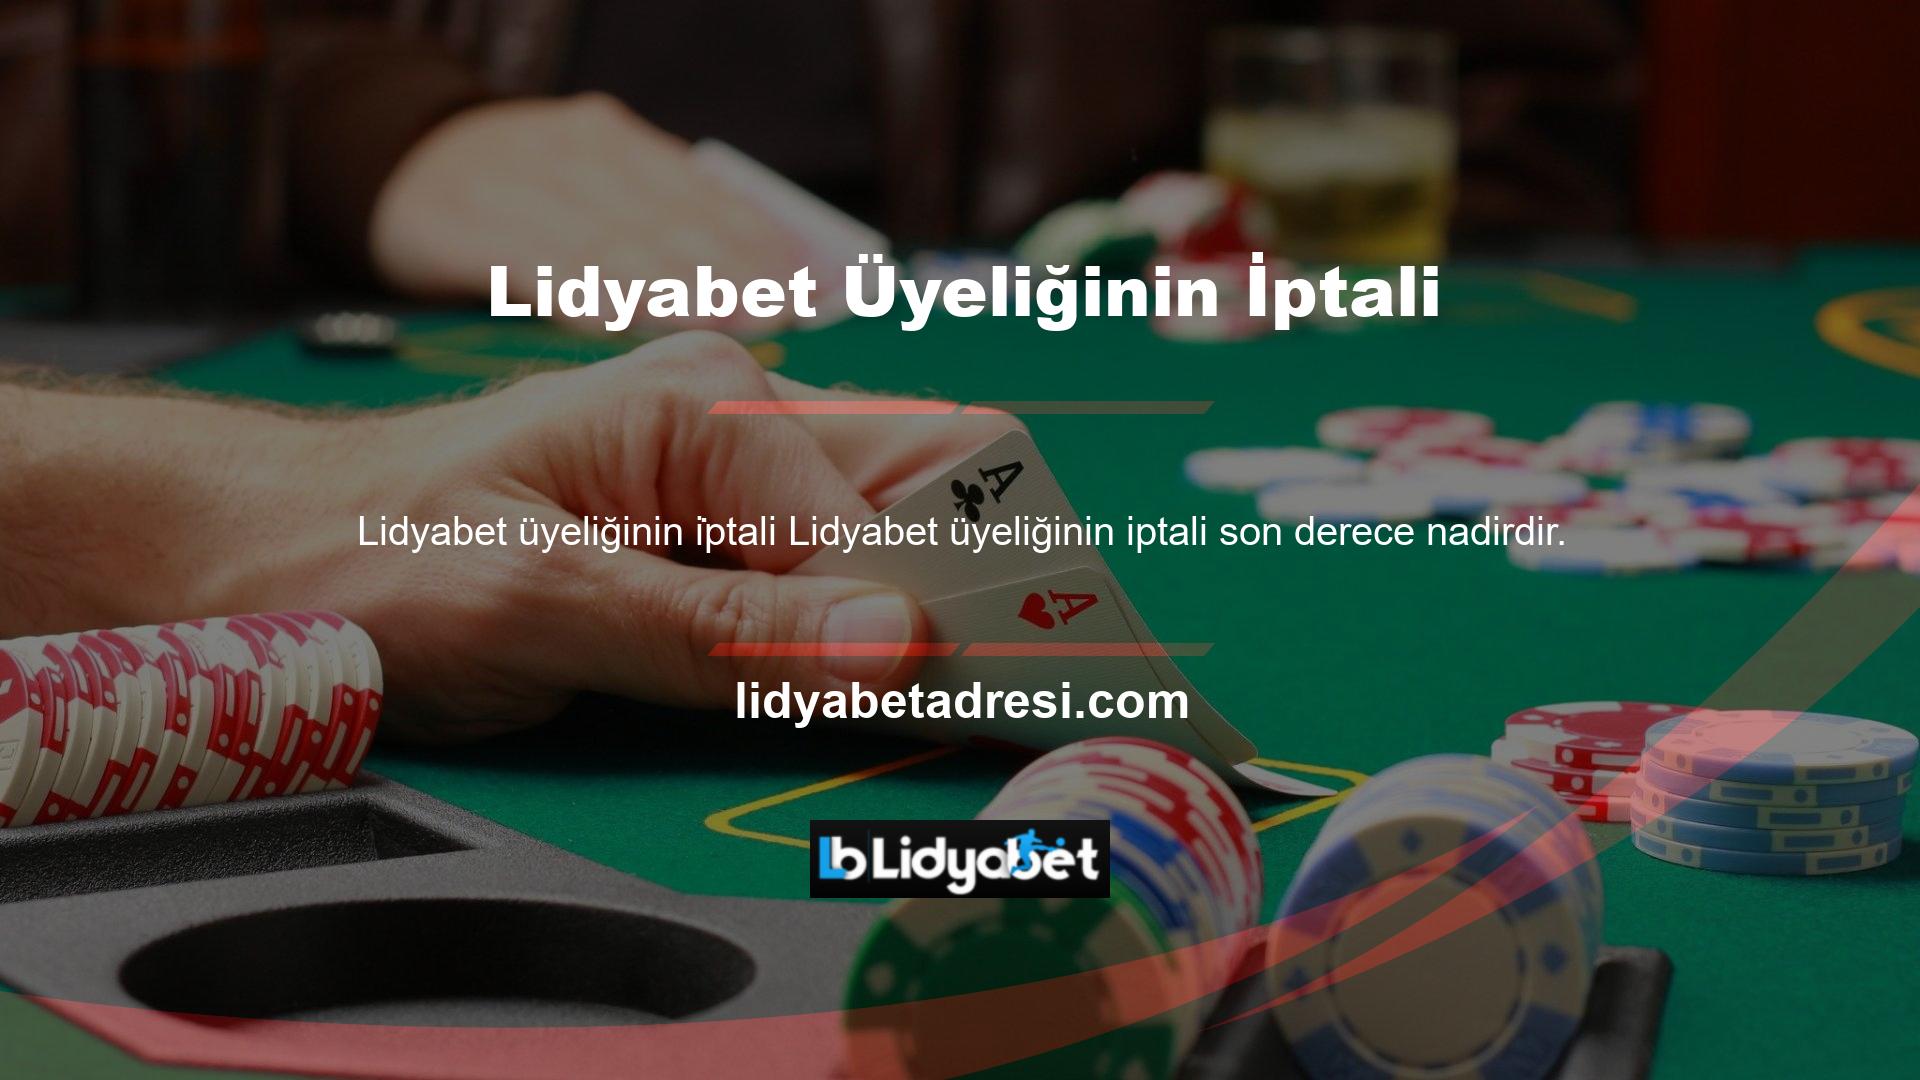 Ülkemizde ve dünyada en az üye iptali gerçekleşen casino şirketlerinden biri de Lidyabet'tir